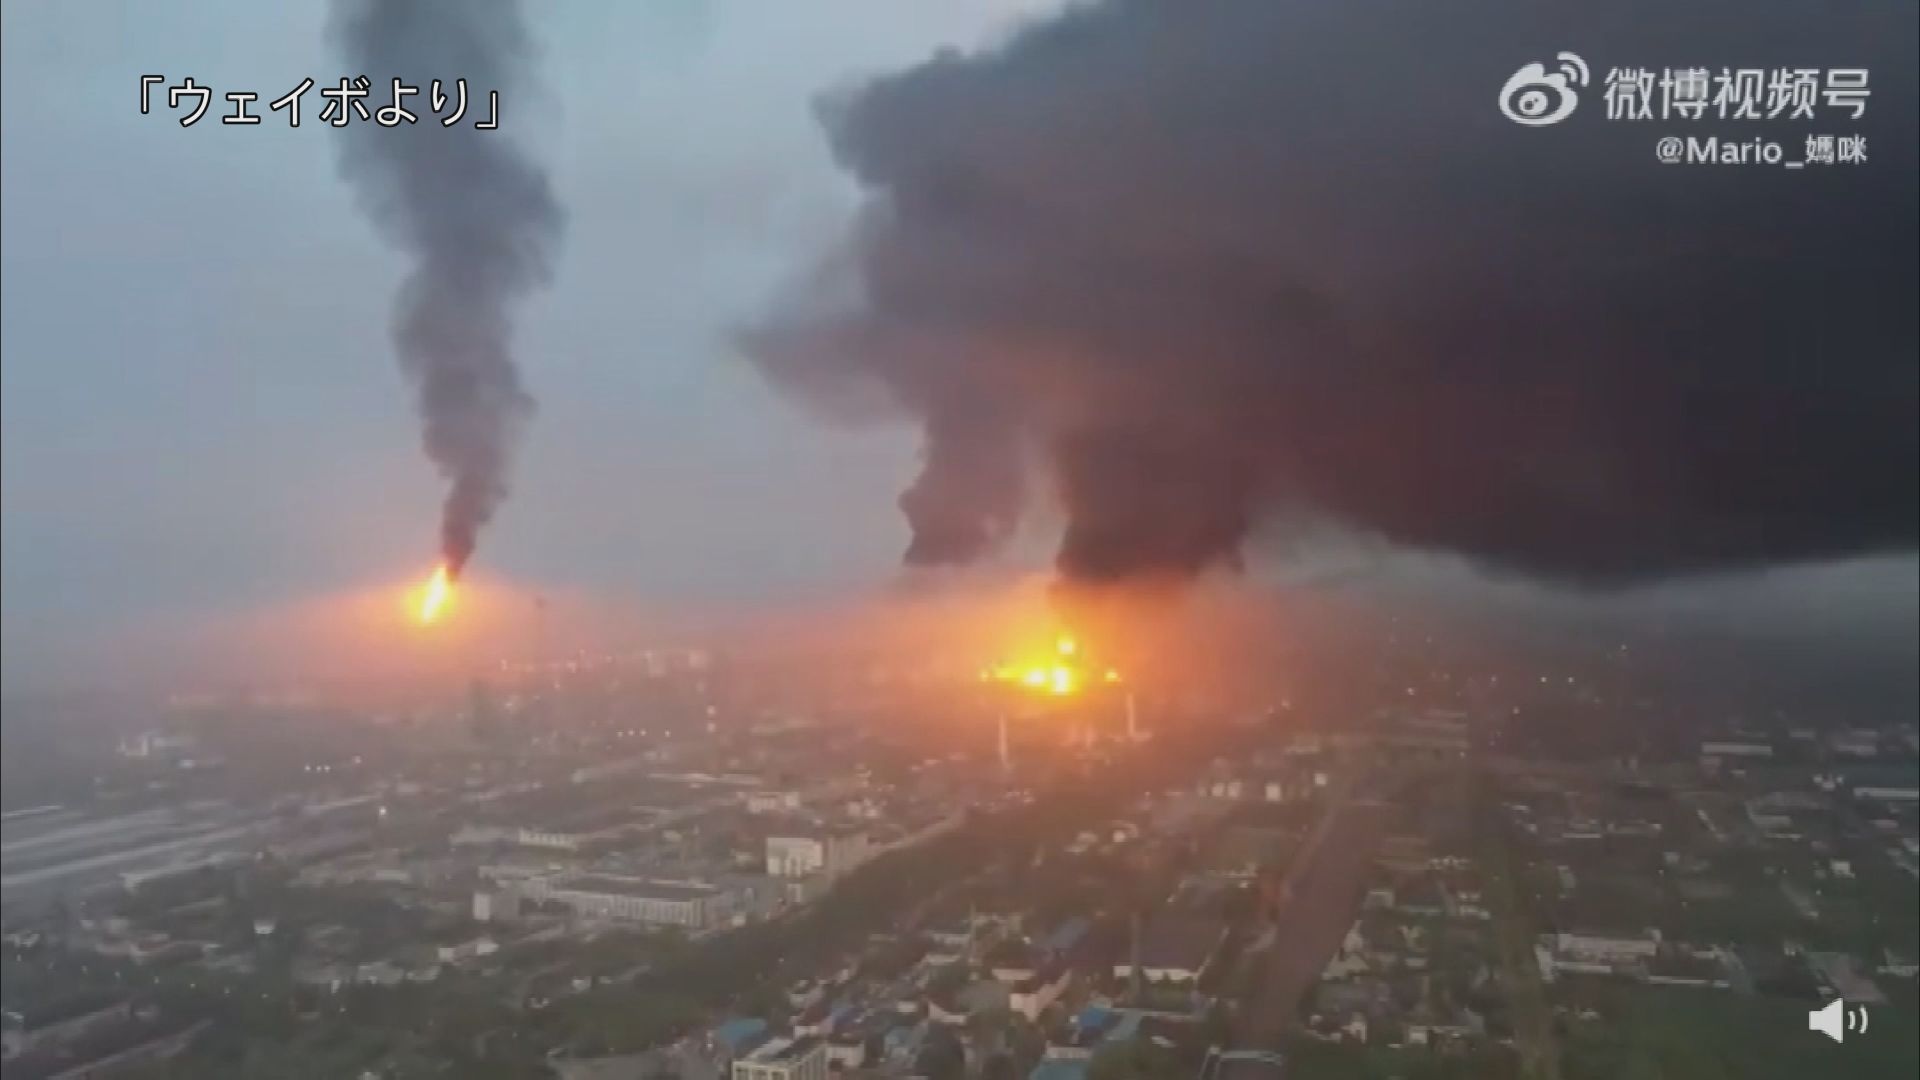 上海の石油化学工場で爆発火災 1人死亡